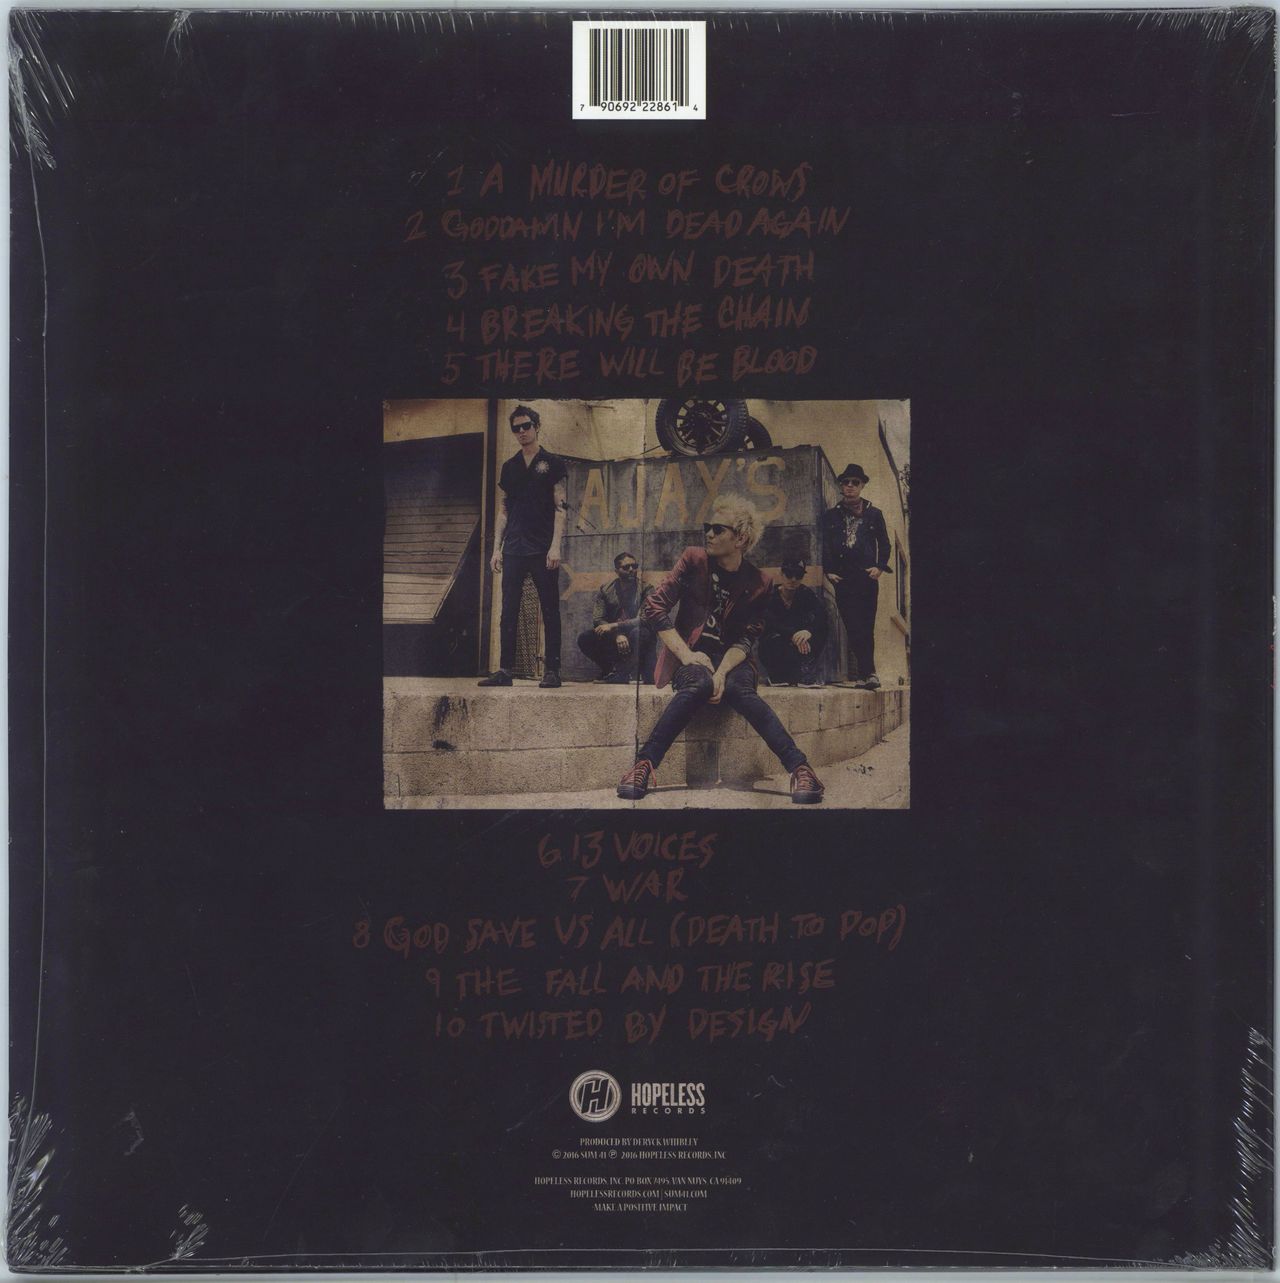 Sum 41 13 Voices - Black Vinyl - Sealed US vinyl LP album (LP record) 790692228614